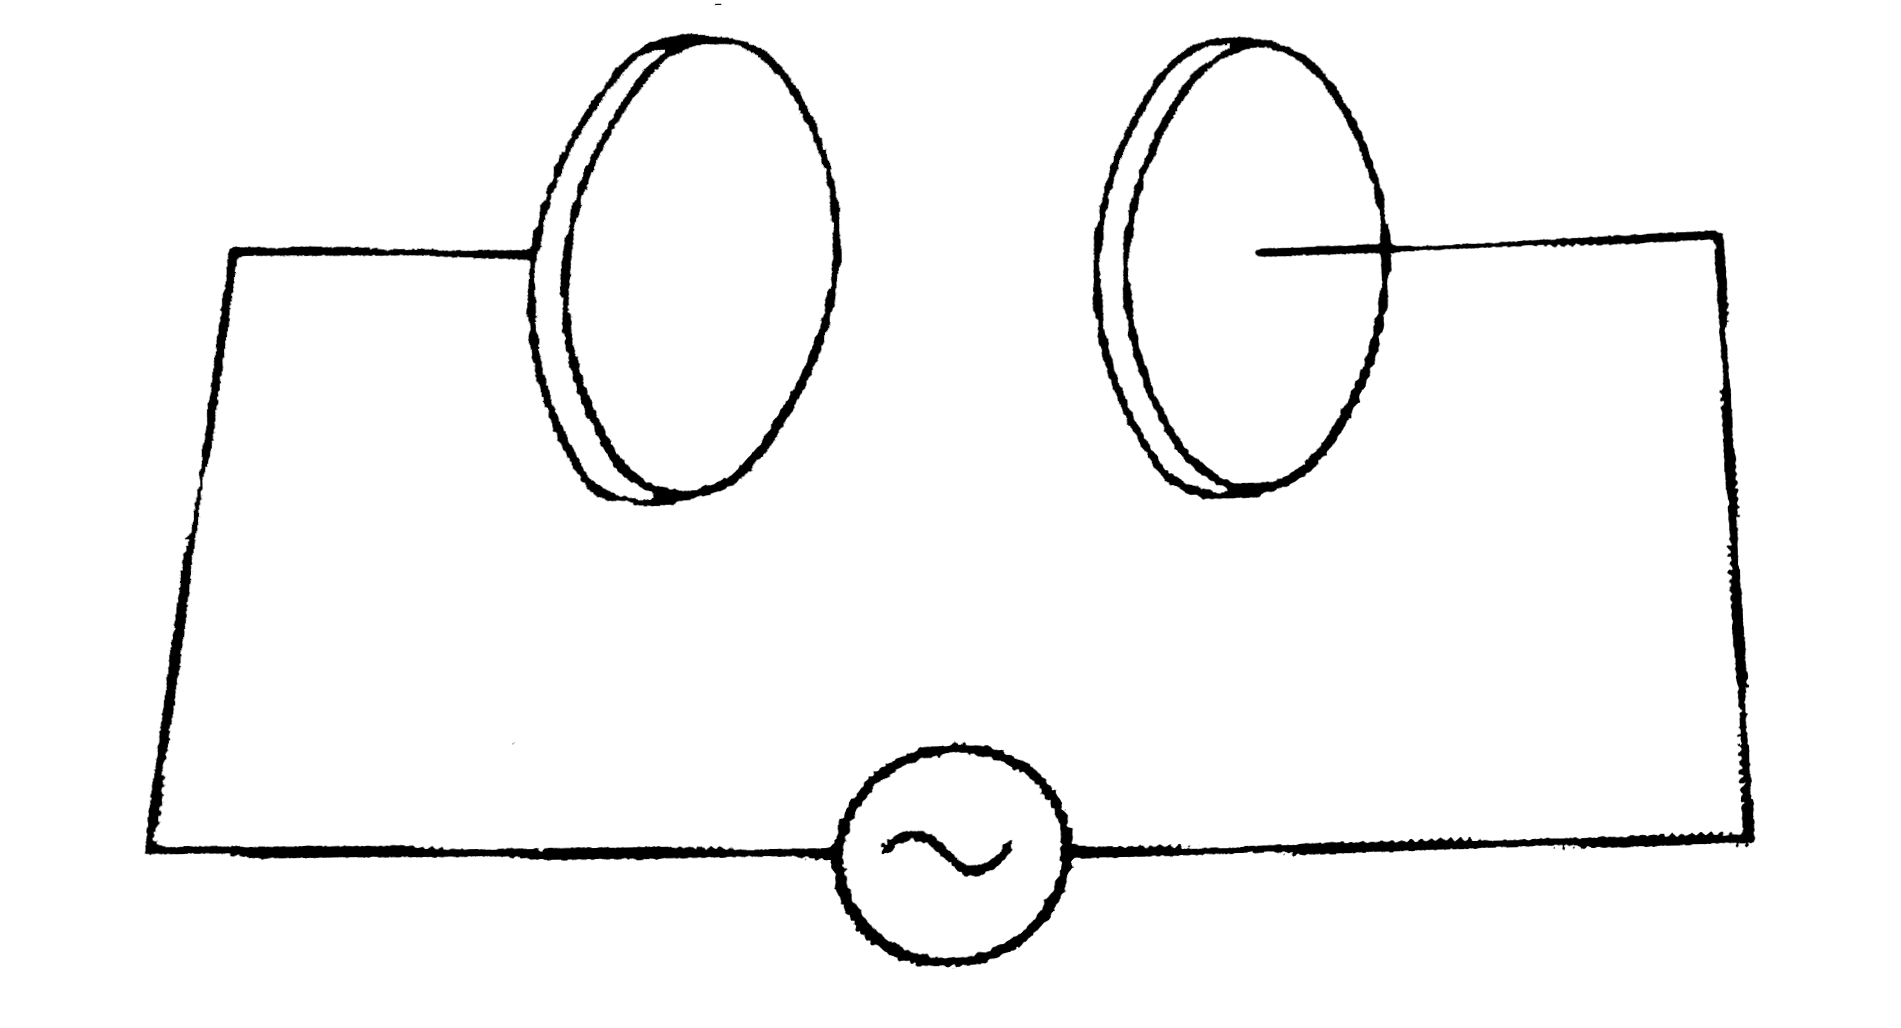 एक समांतर प्लेट संधारित्र (चित्र के अनुसार), R = 6.0 सेमी त्रिज्या की दो वृताकार प्लेटो से बना है और इसकी धारिता c = 100 pF है । संधारित्र को 230 वोल्ट, 300 rad s^(-1) की (कोणीय) आवृति के किसी स्रोत से जोड़ा गया है ।   (a) चालन धारा का rms मान क्या है ?   (b) क्या चालन धारा विस्थापन धारा के बराबर है ?   (c) प्लेटो के बीच, अक्ष से 3.0 सेमी की दूरी पर सिथत बिंदु पर vec(B) का आयाम ज्ञात कीजिए ।